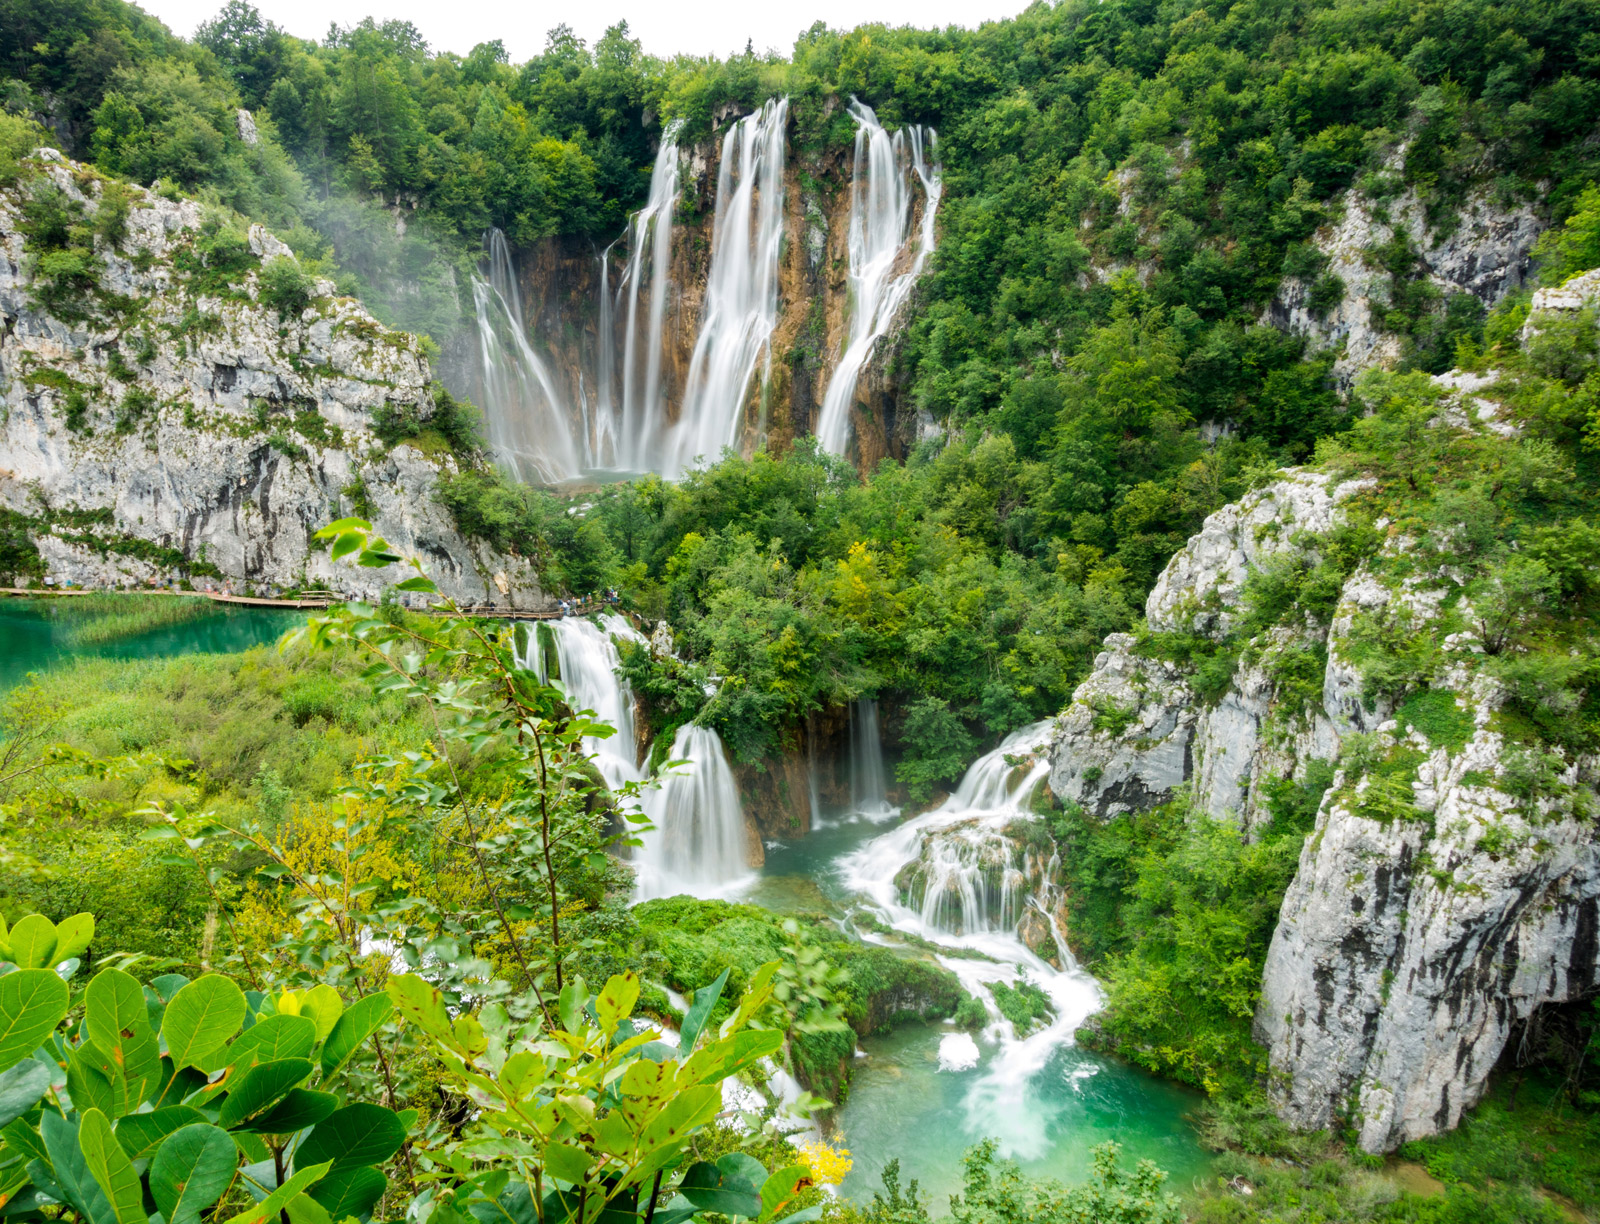 Urlaubsparadies Kroatien – So wird die Natur des Landes geschützt